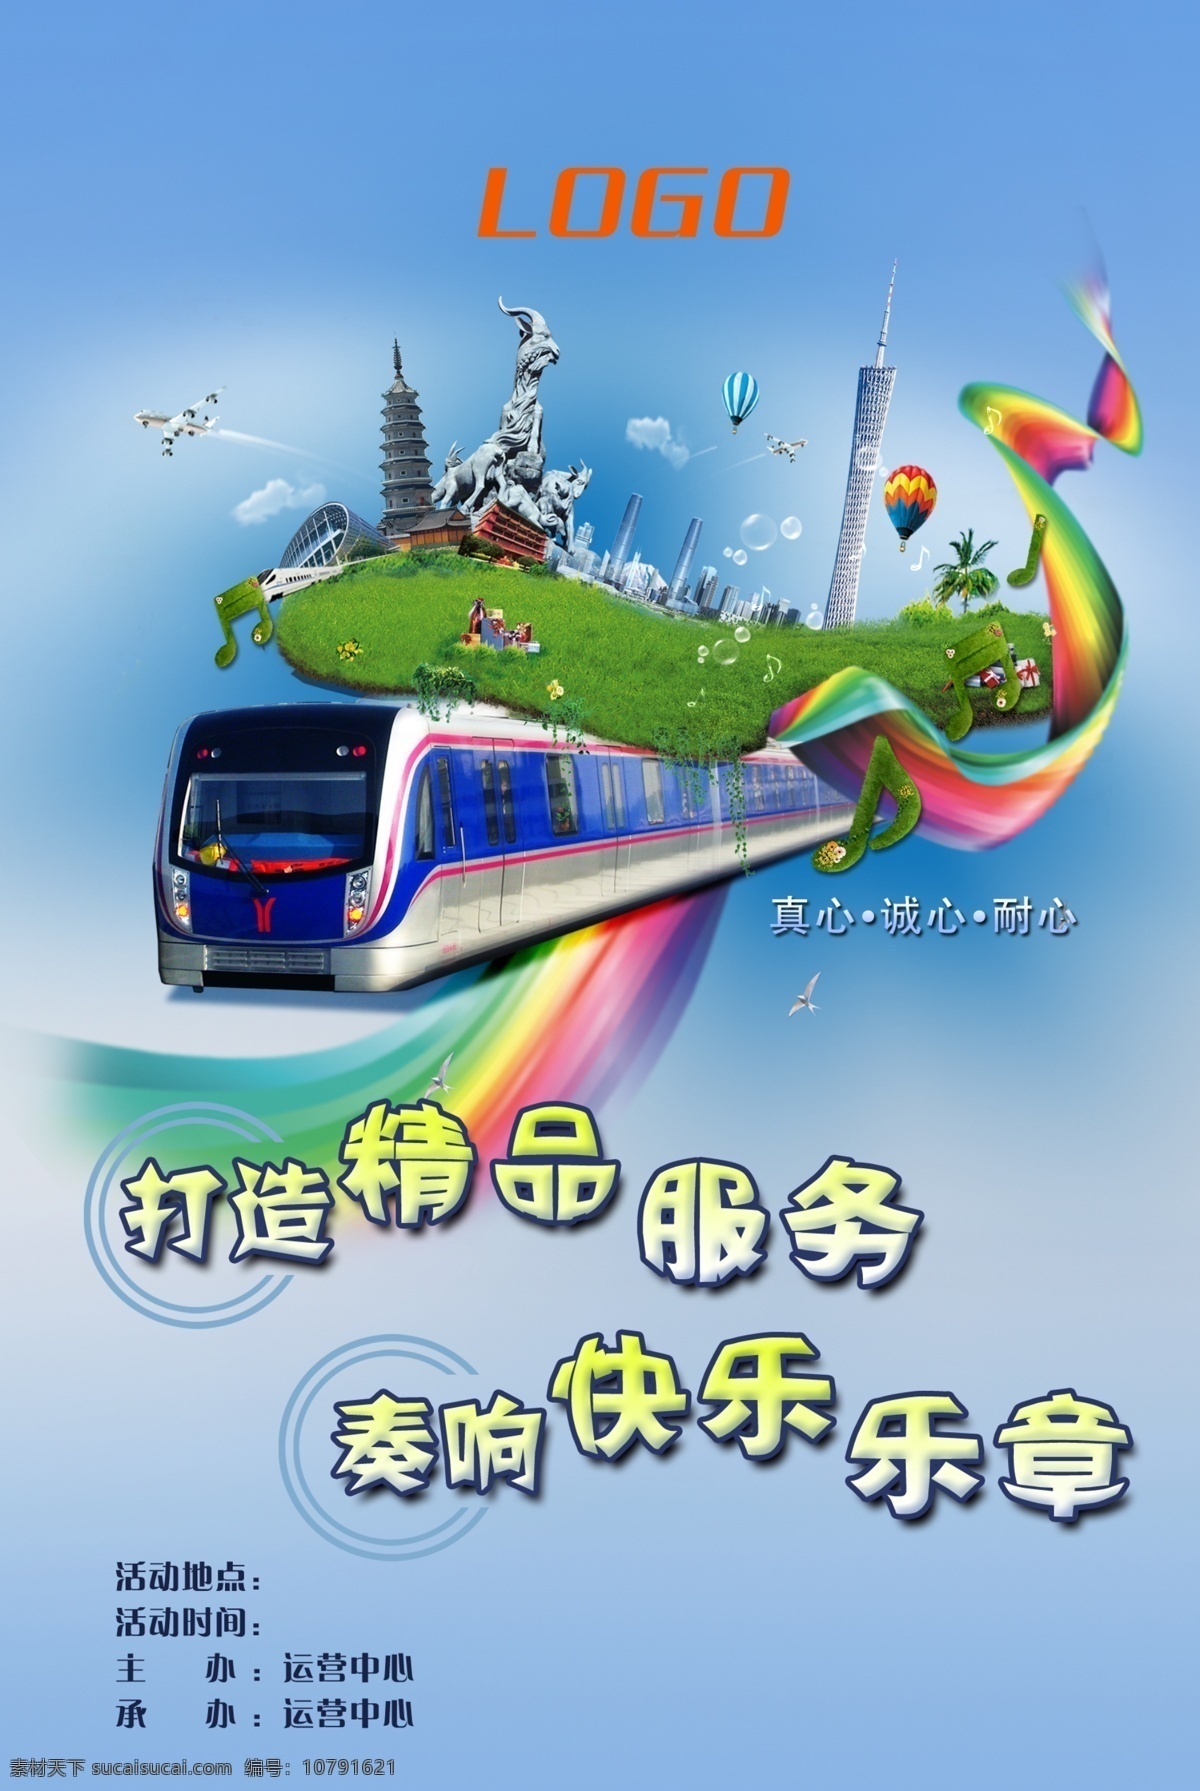 地铁海报 地铁 广州地铁 广州 火车 高铁 动车 欢乐 海报 微笑服务 地铁服务 广告设计模板 源文件